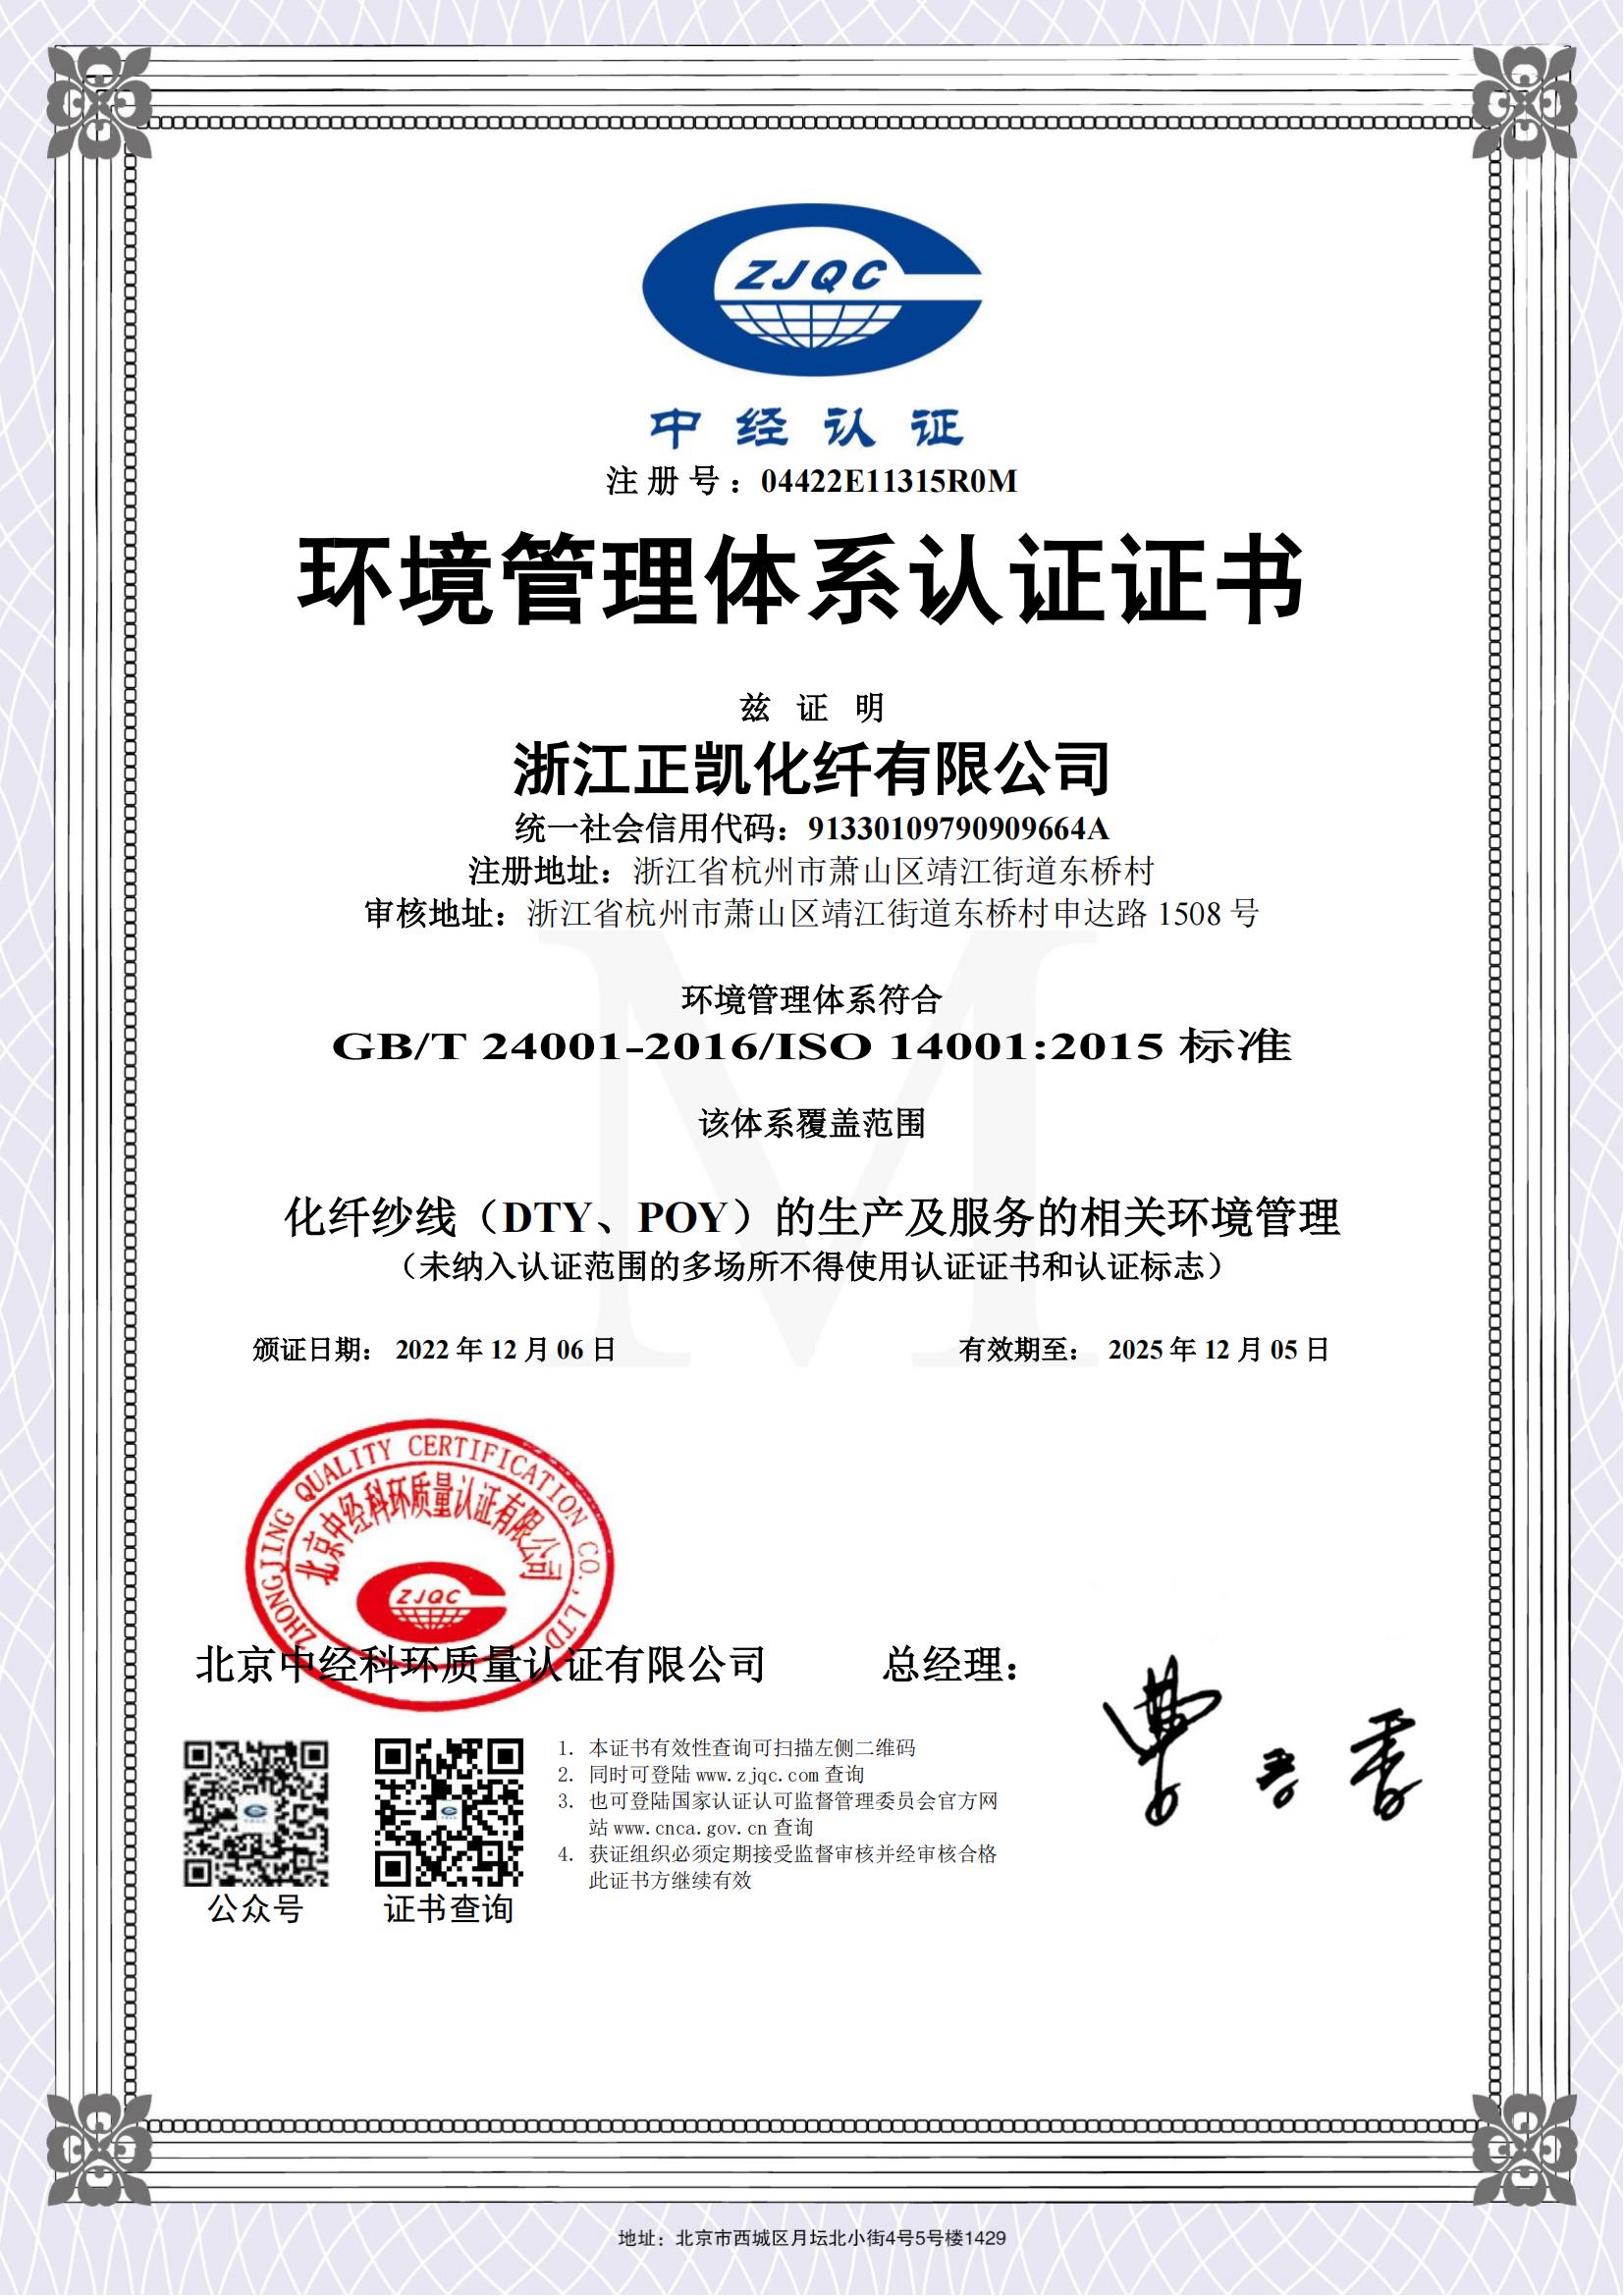 3.正凯化纤环境管理体系认证证书